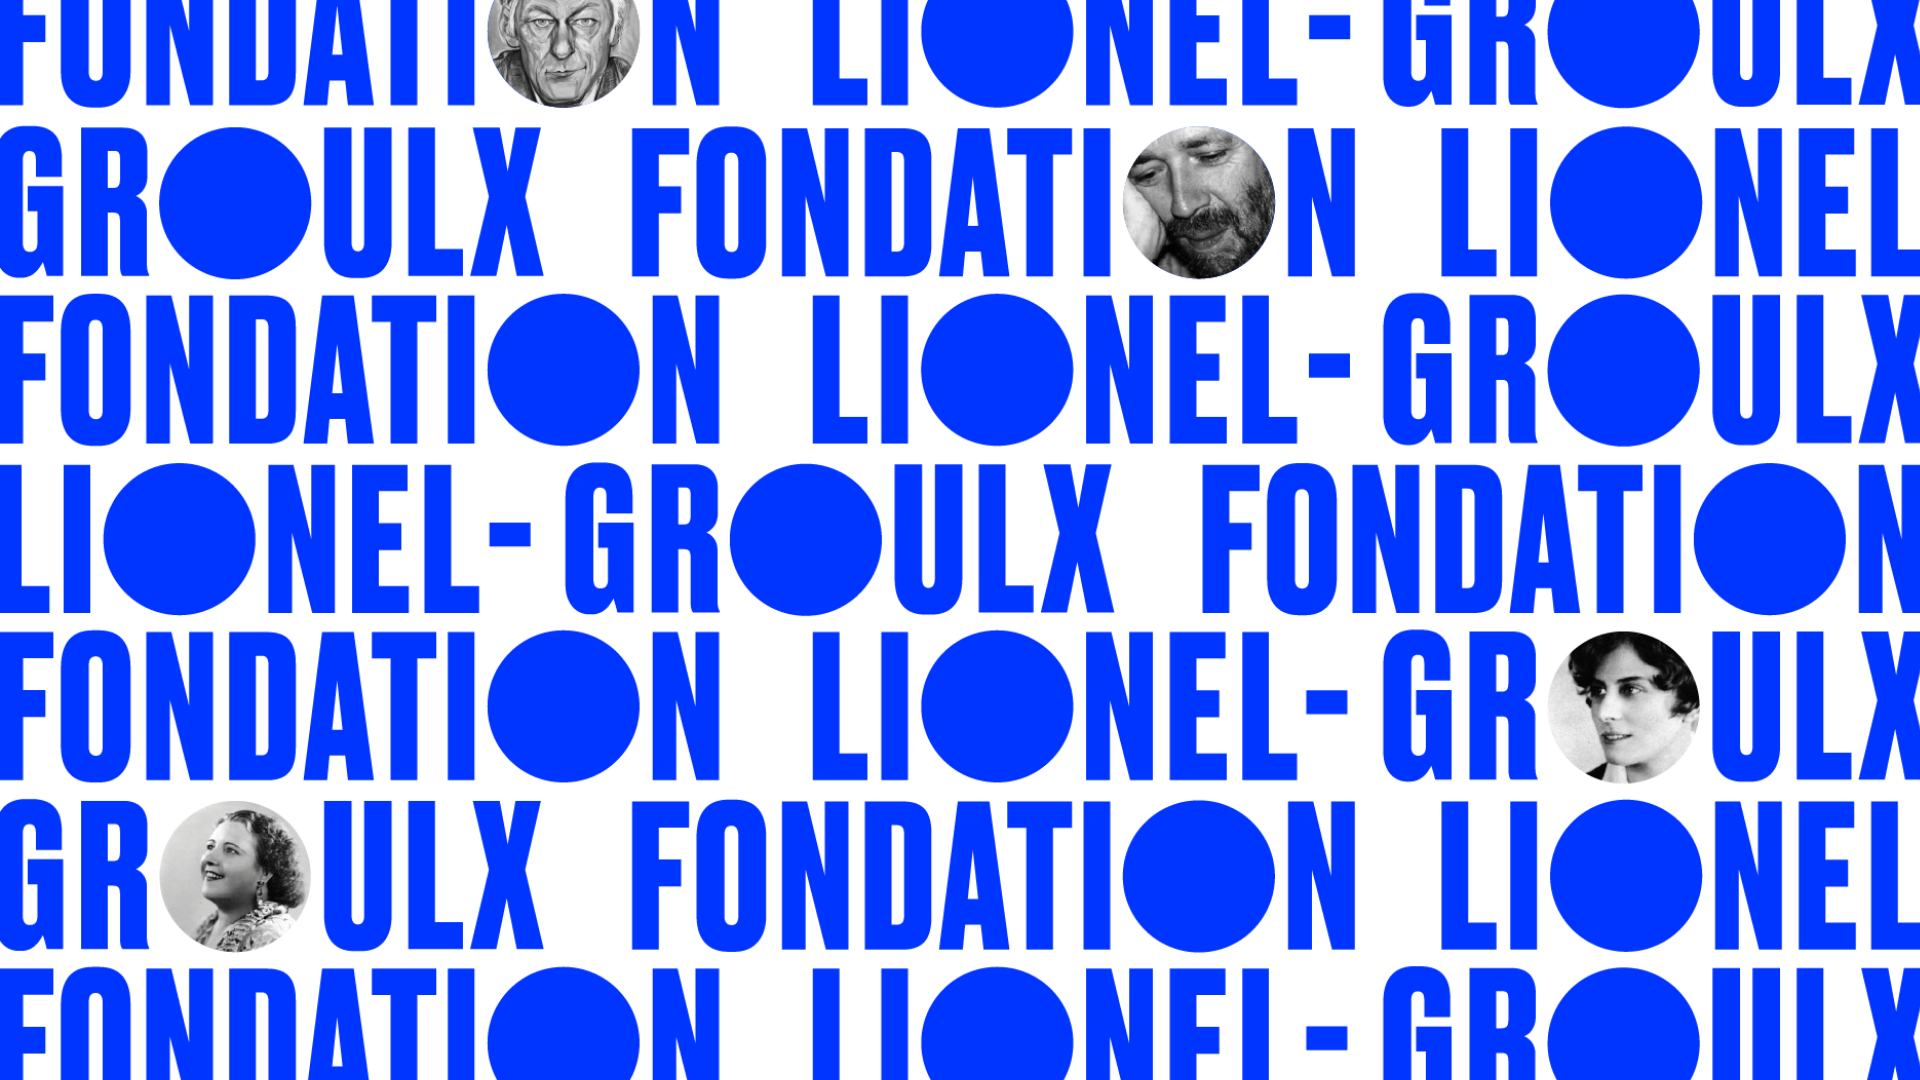 Fond Lionel-Groulx, nouvelle image 